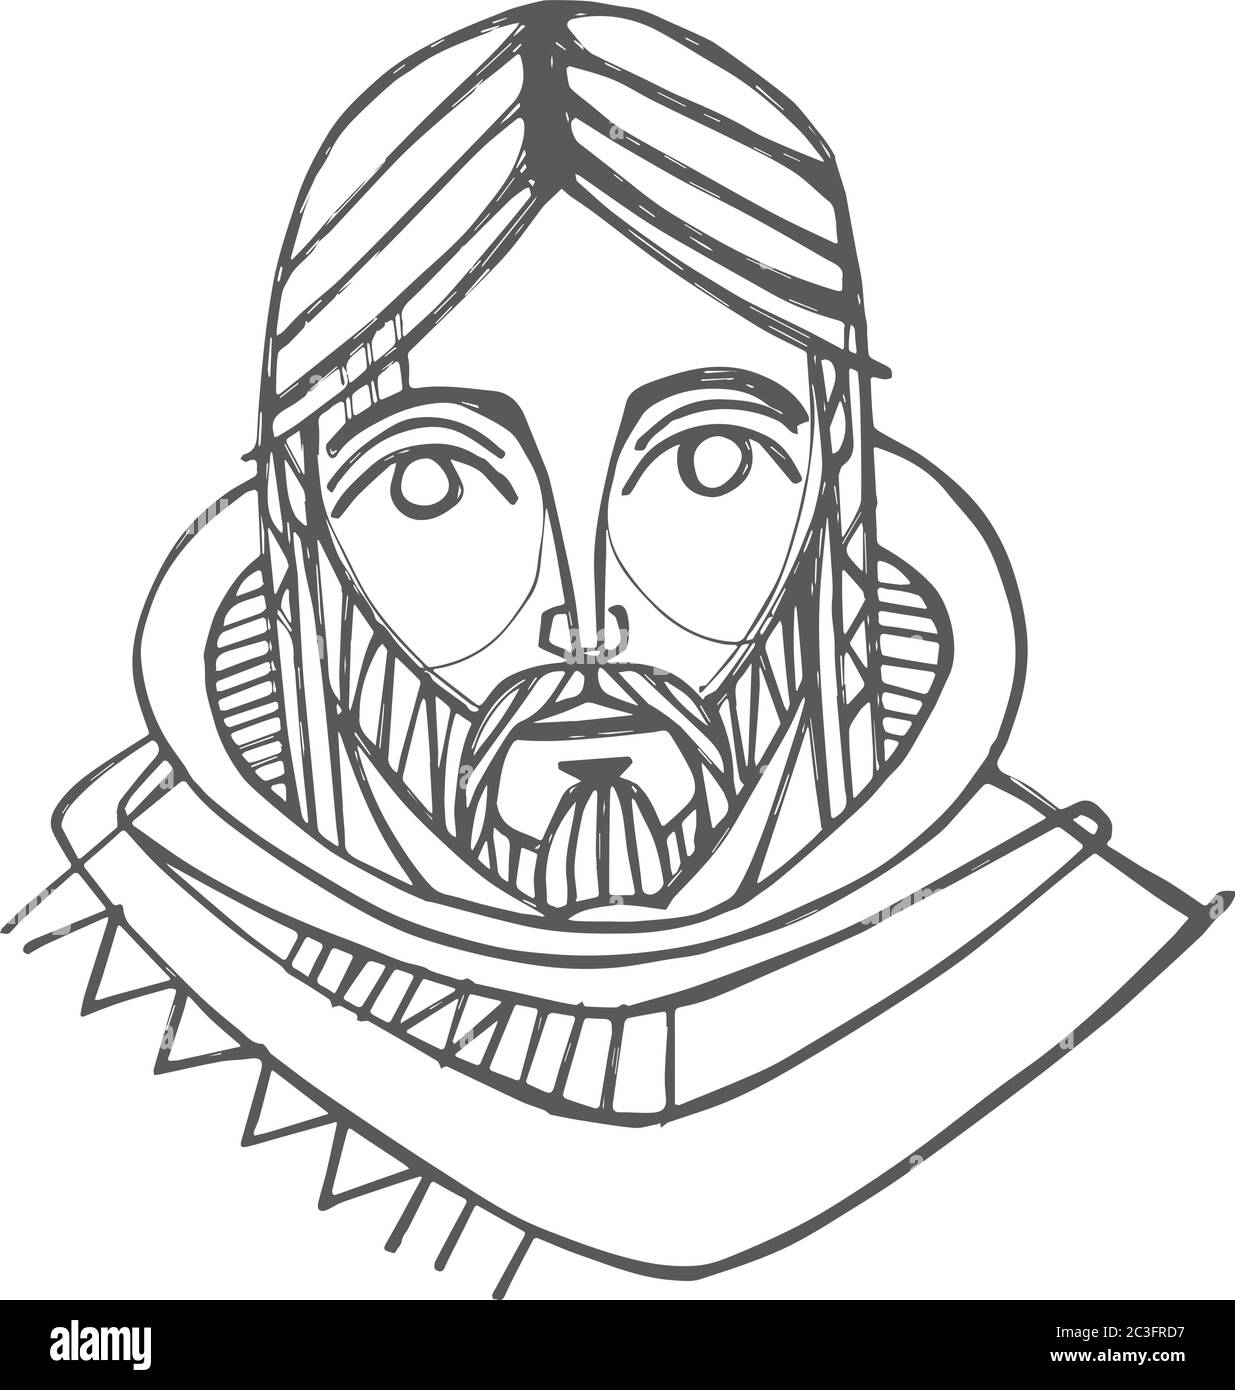 Vektor-Illustration von Hand gezeichnet oder eine Zeichnung Antlitz Jesu Christi Stock Vektor